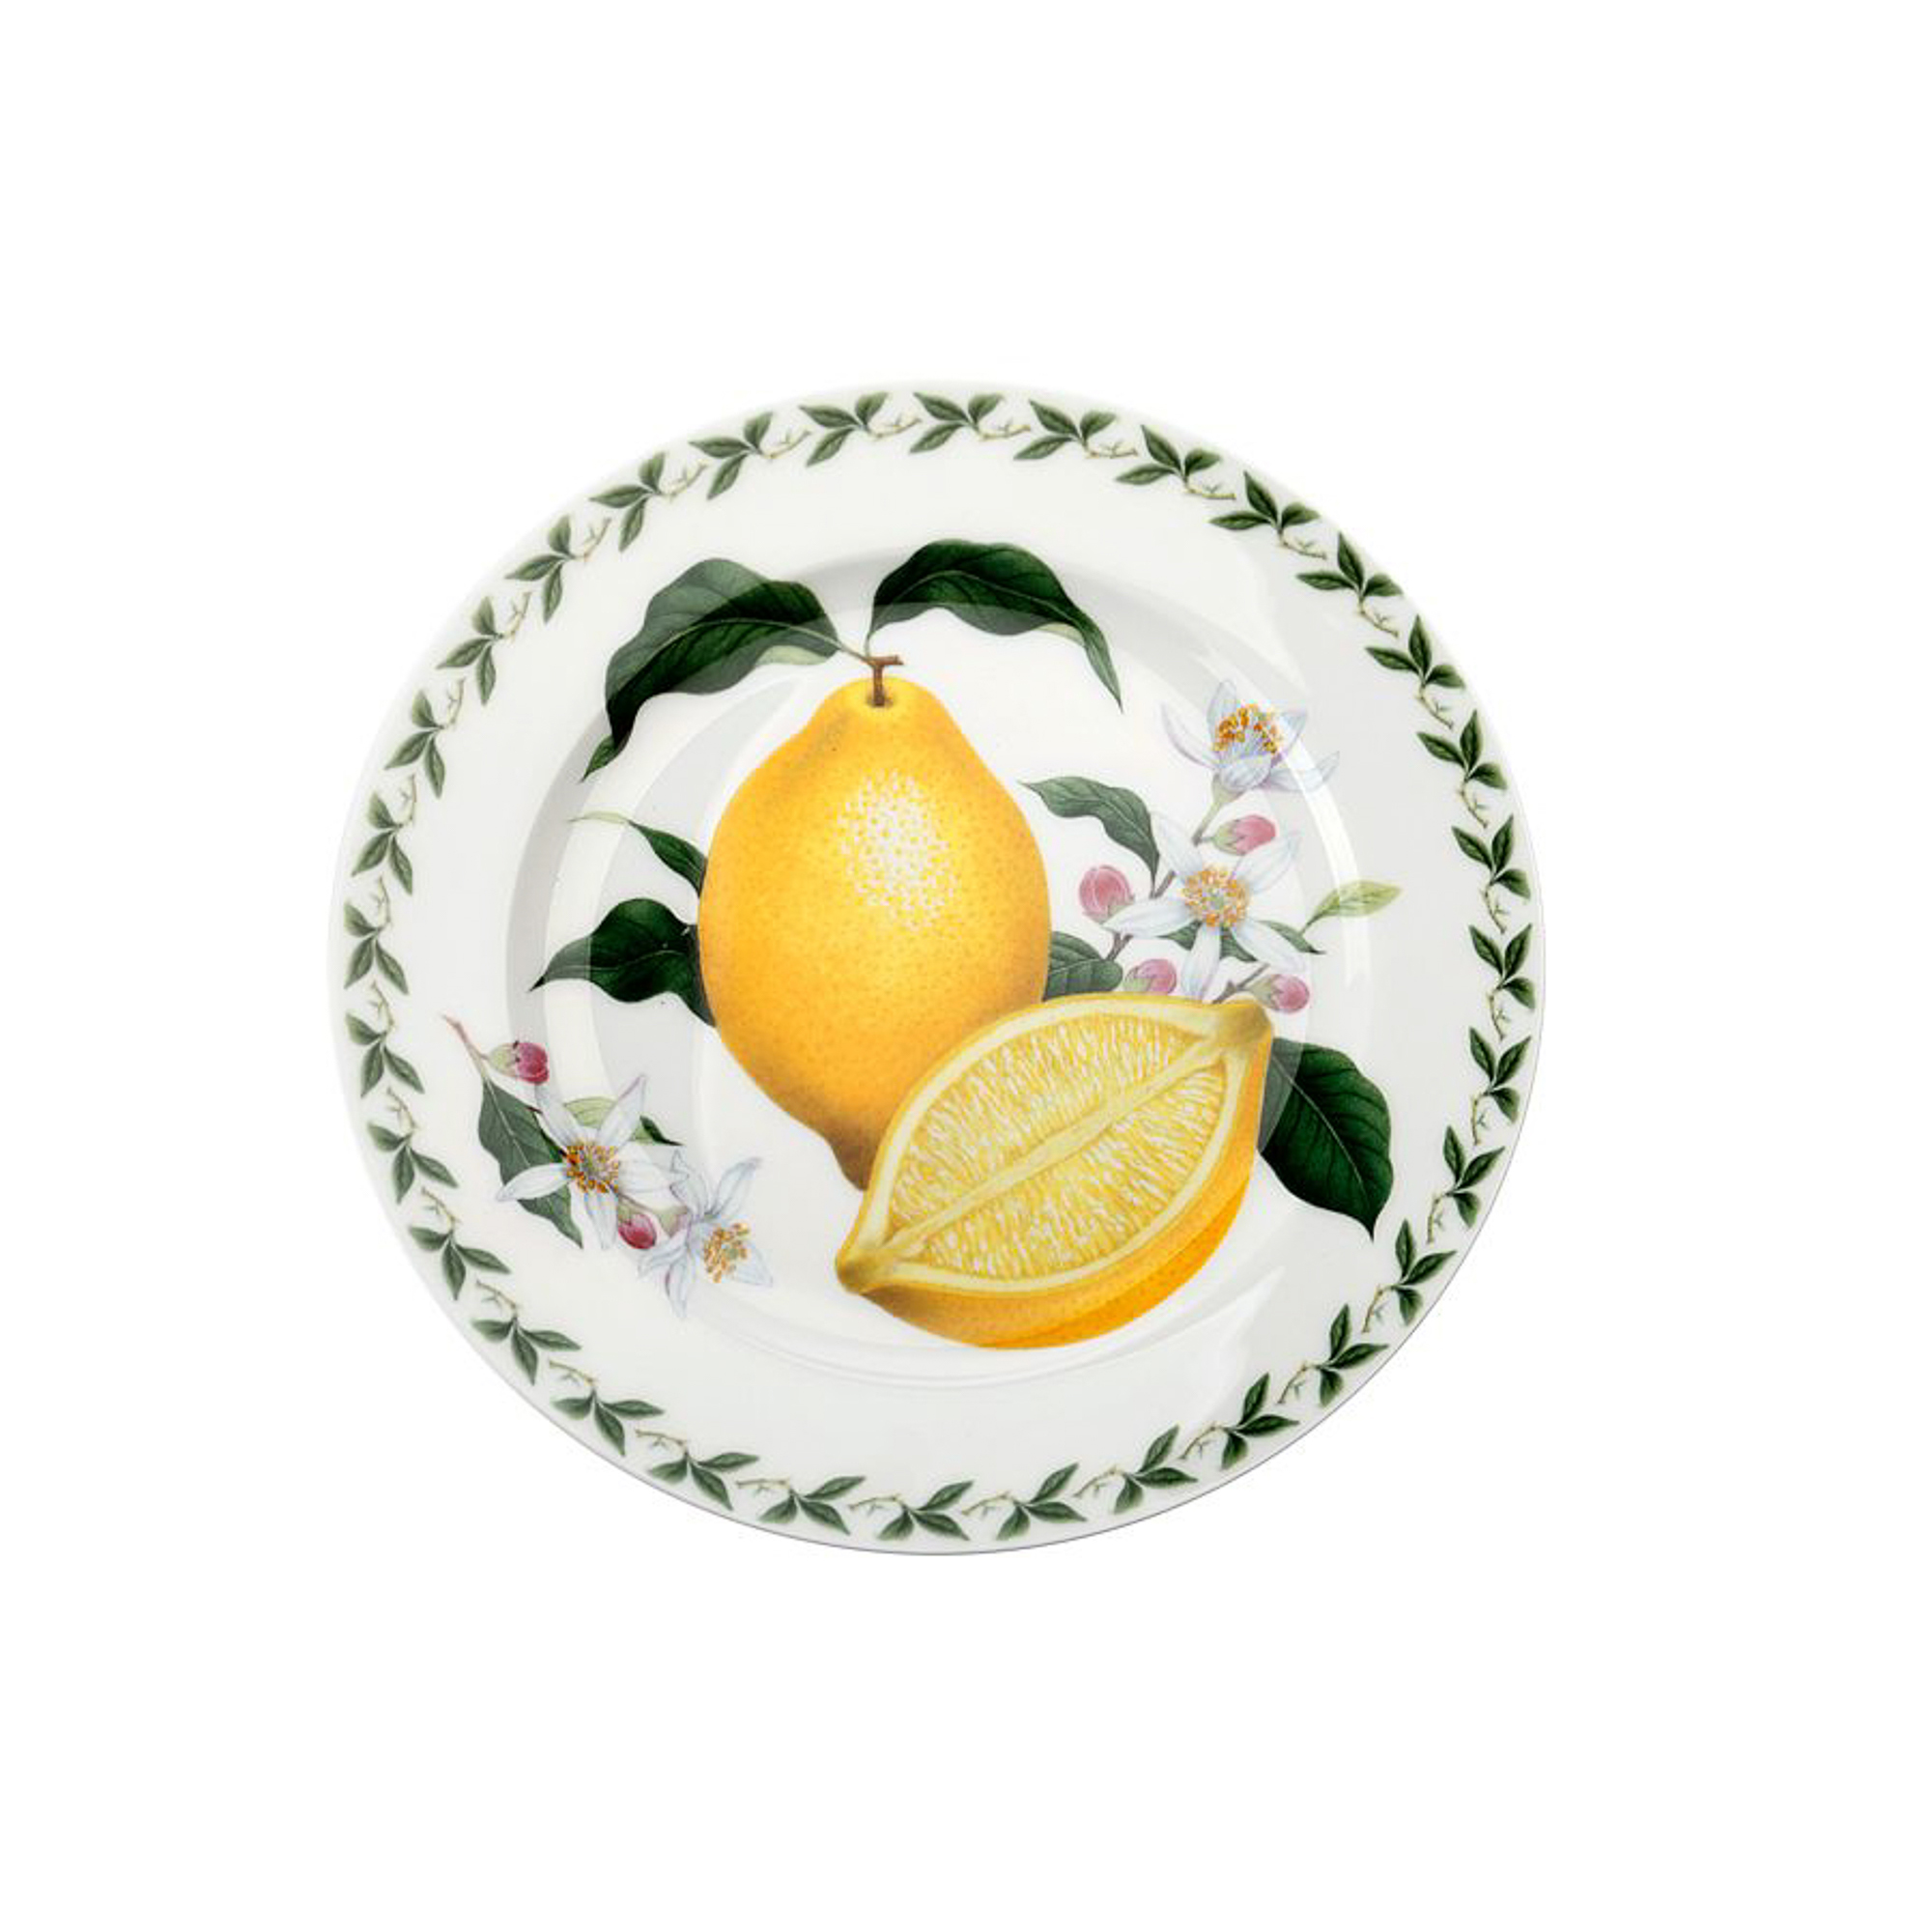 Тарелки с лимонами. Maxwell & Williams тарелка лимон. Тарелка Maxwell & Williams. Десертная тарелка Maxwell Williams. Салатник Максвелл и Вильямс фруктовый сад.